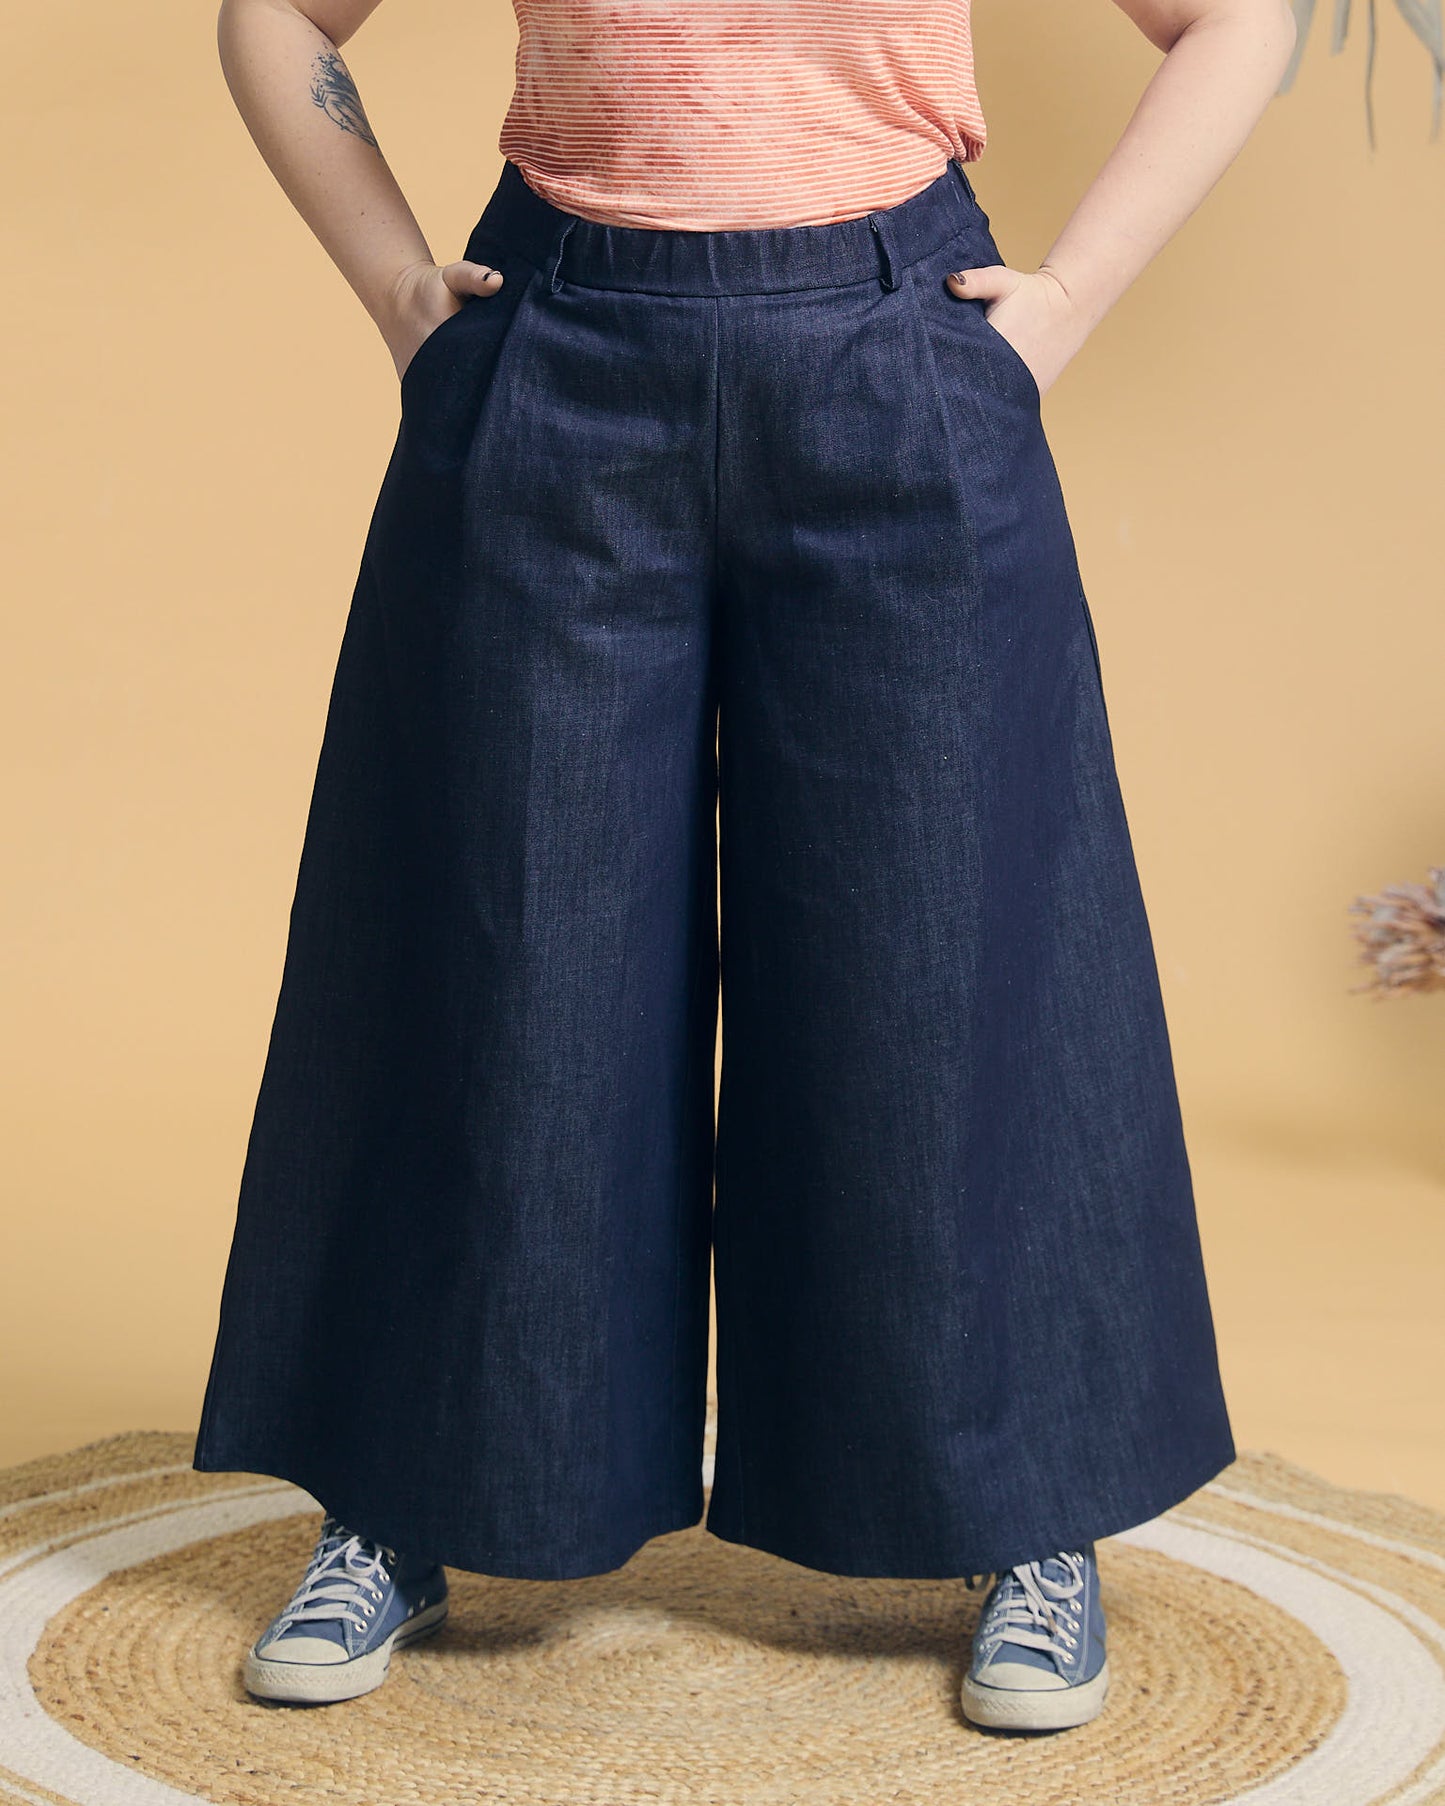 Pantalone Samurai Long in denim di cotone blu scuro